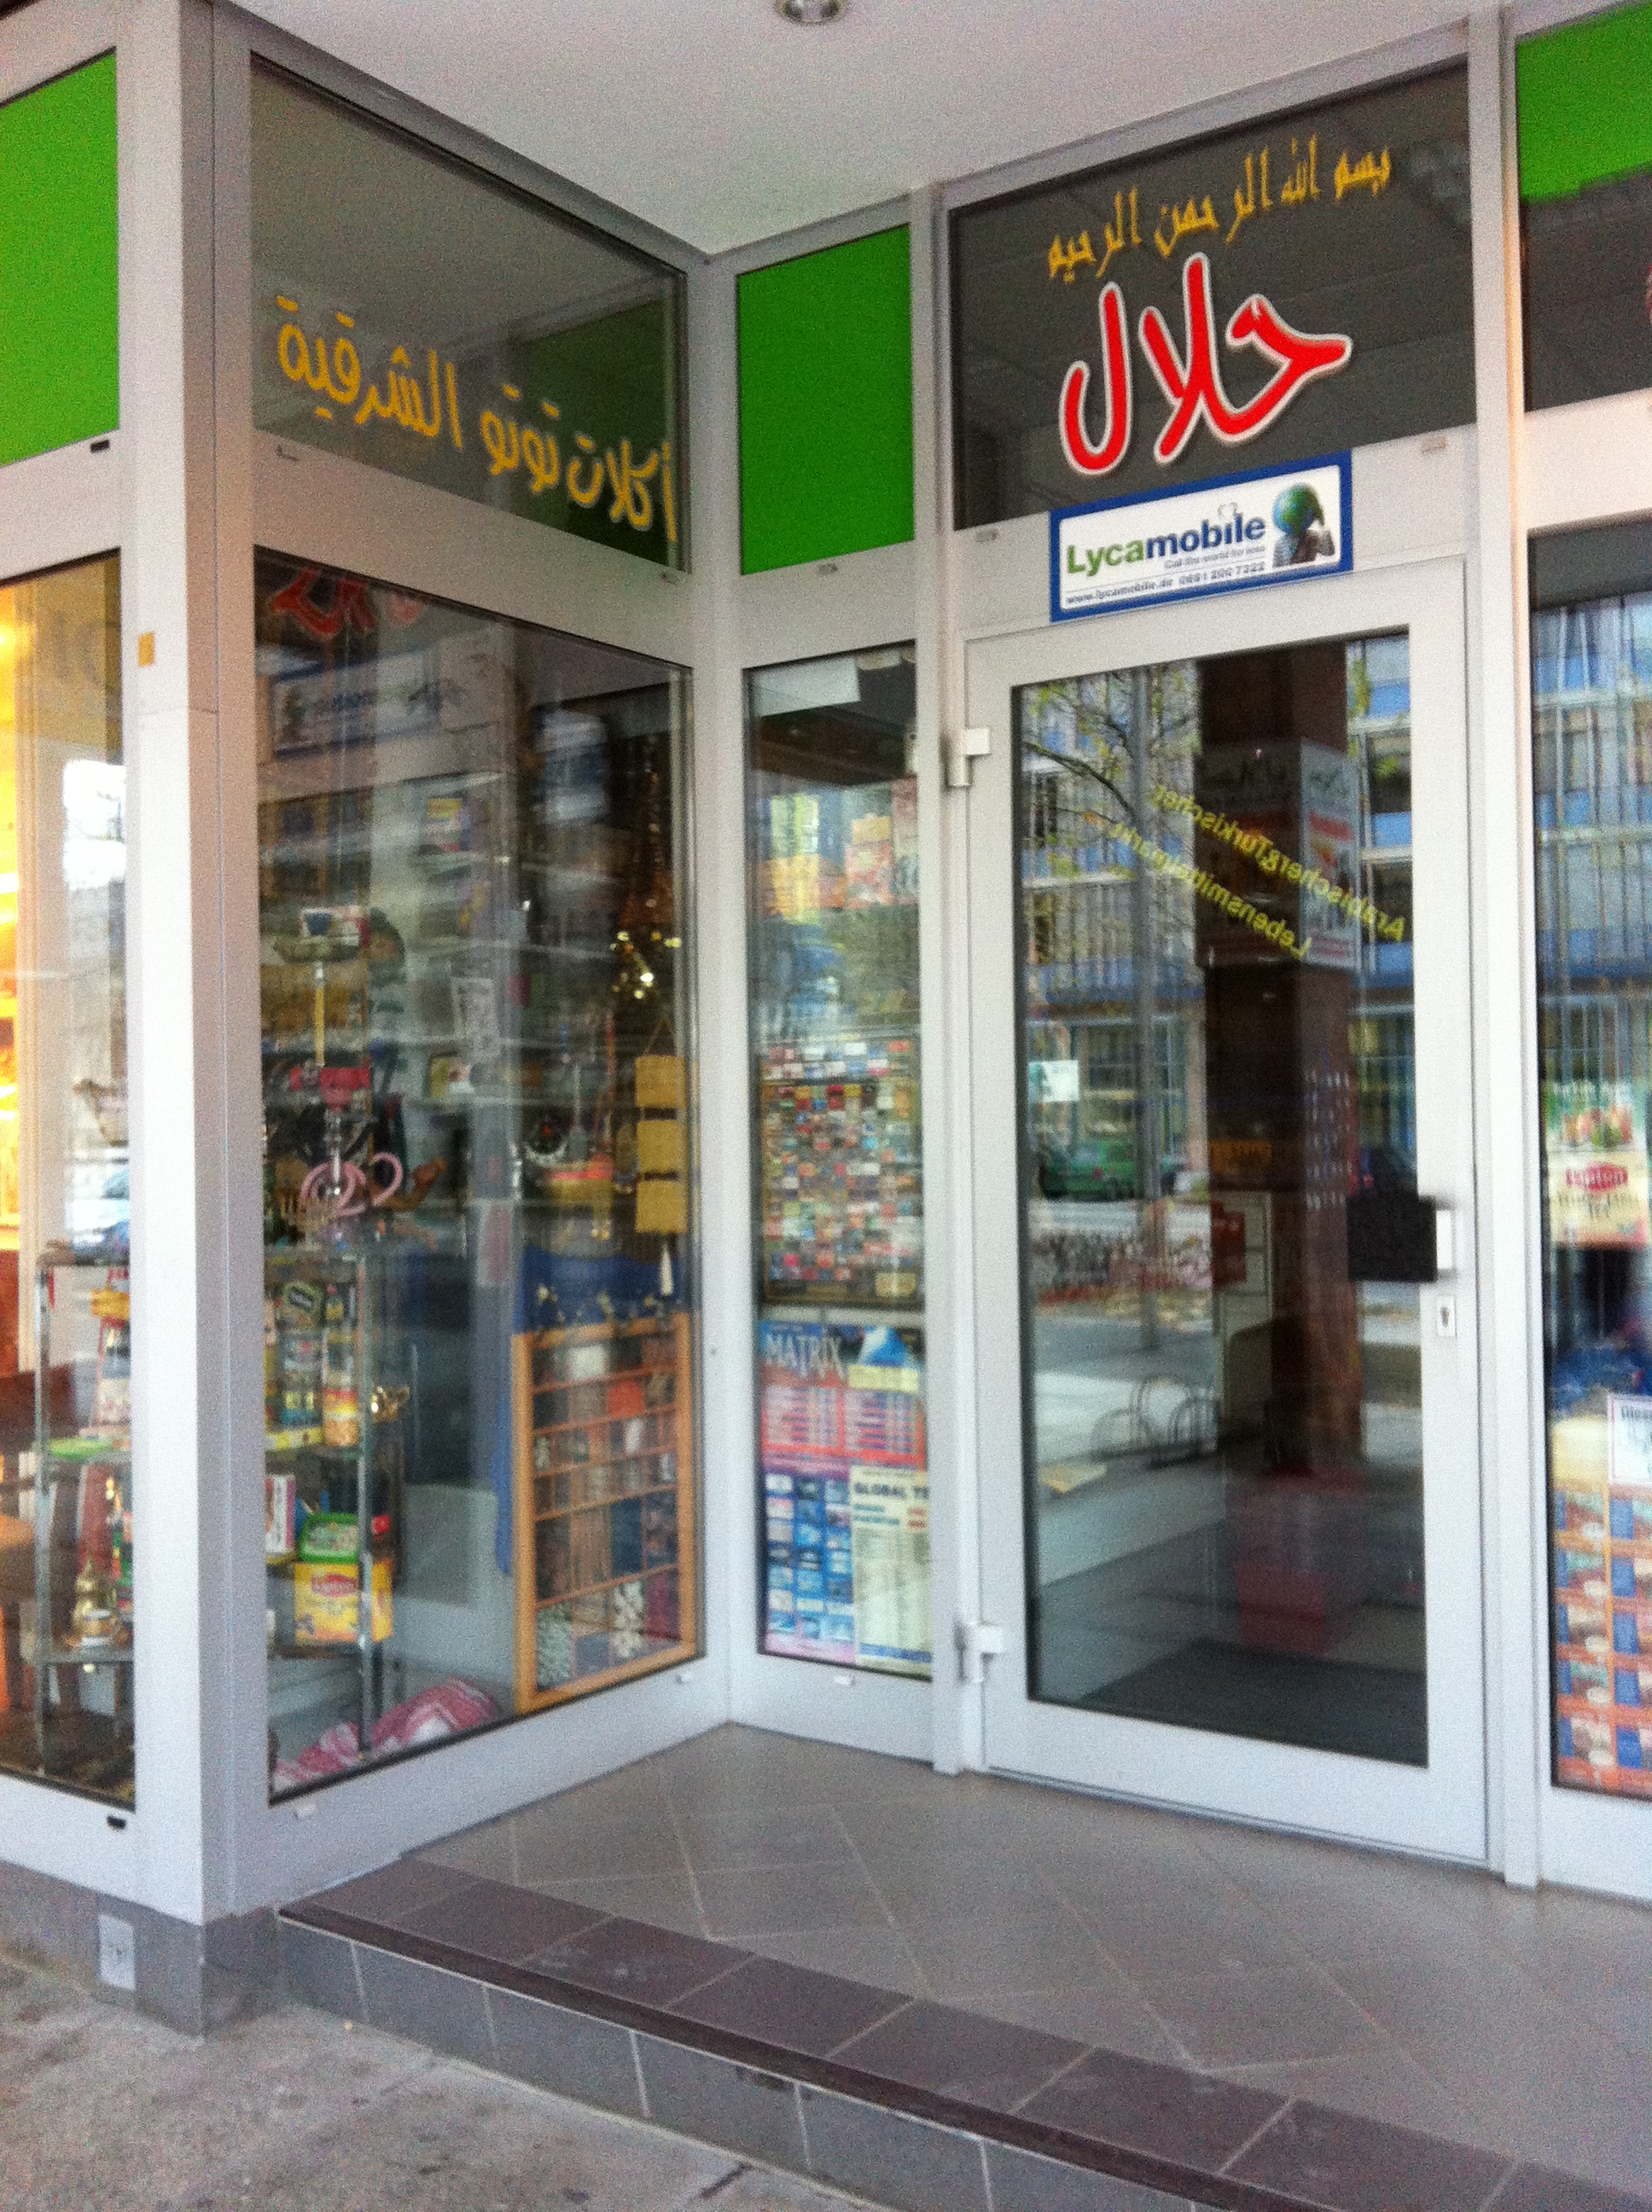 Bild 1 Halal Orientalische Lebensmittel in Chemnitz